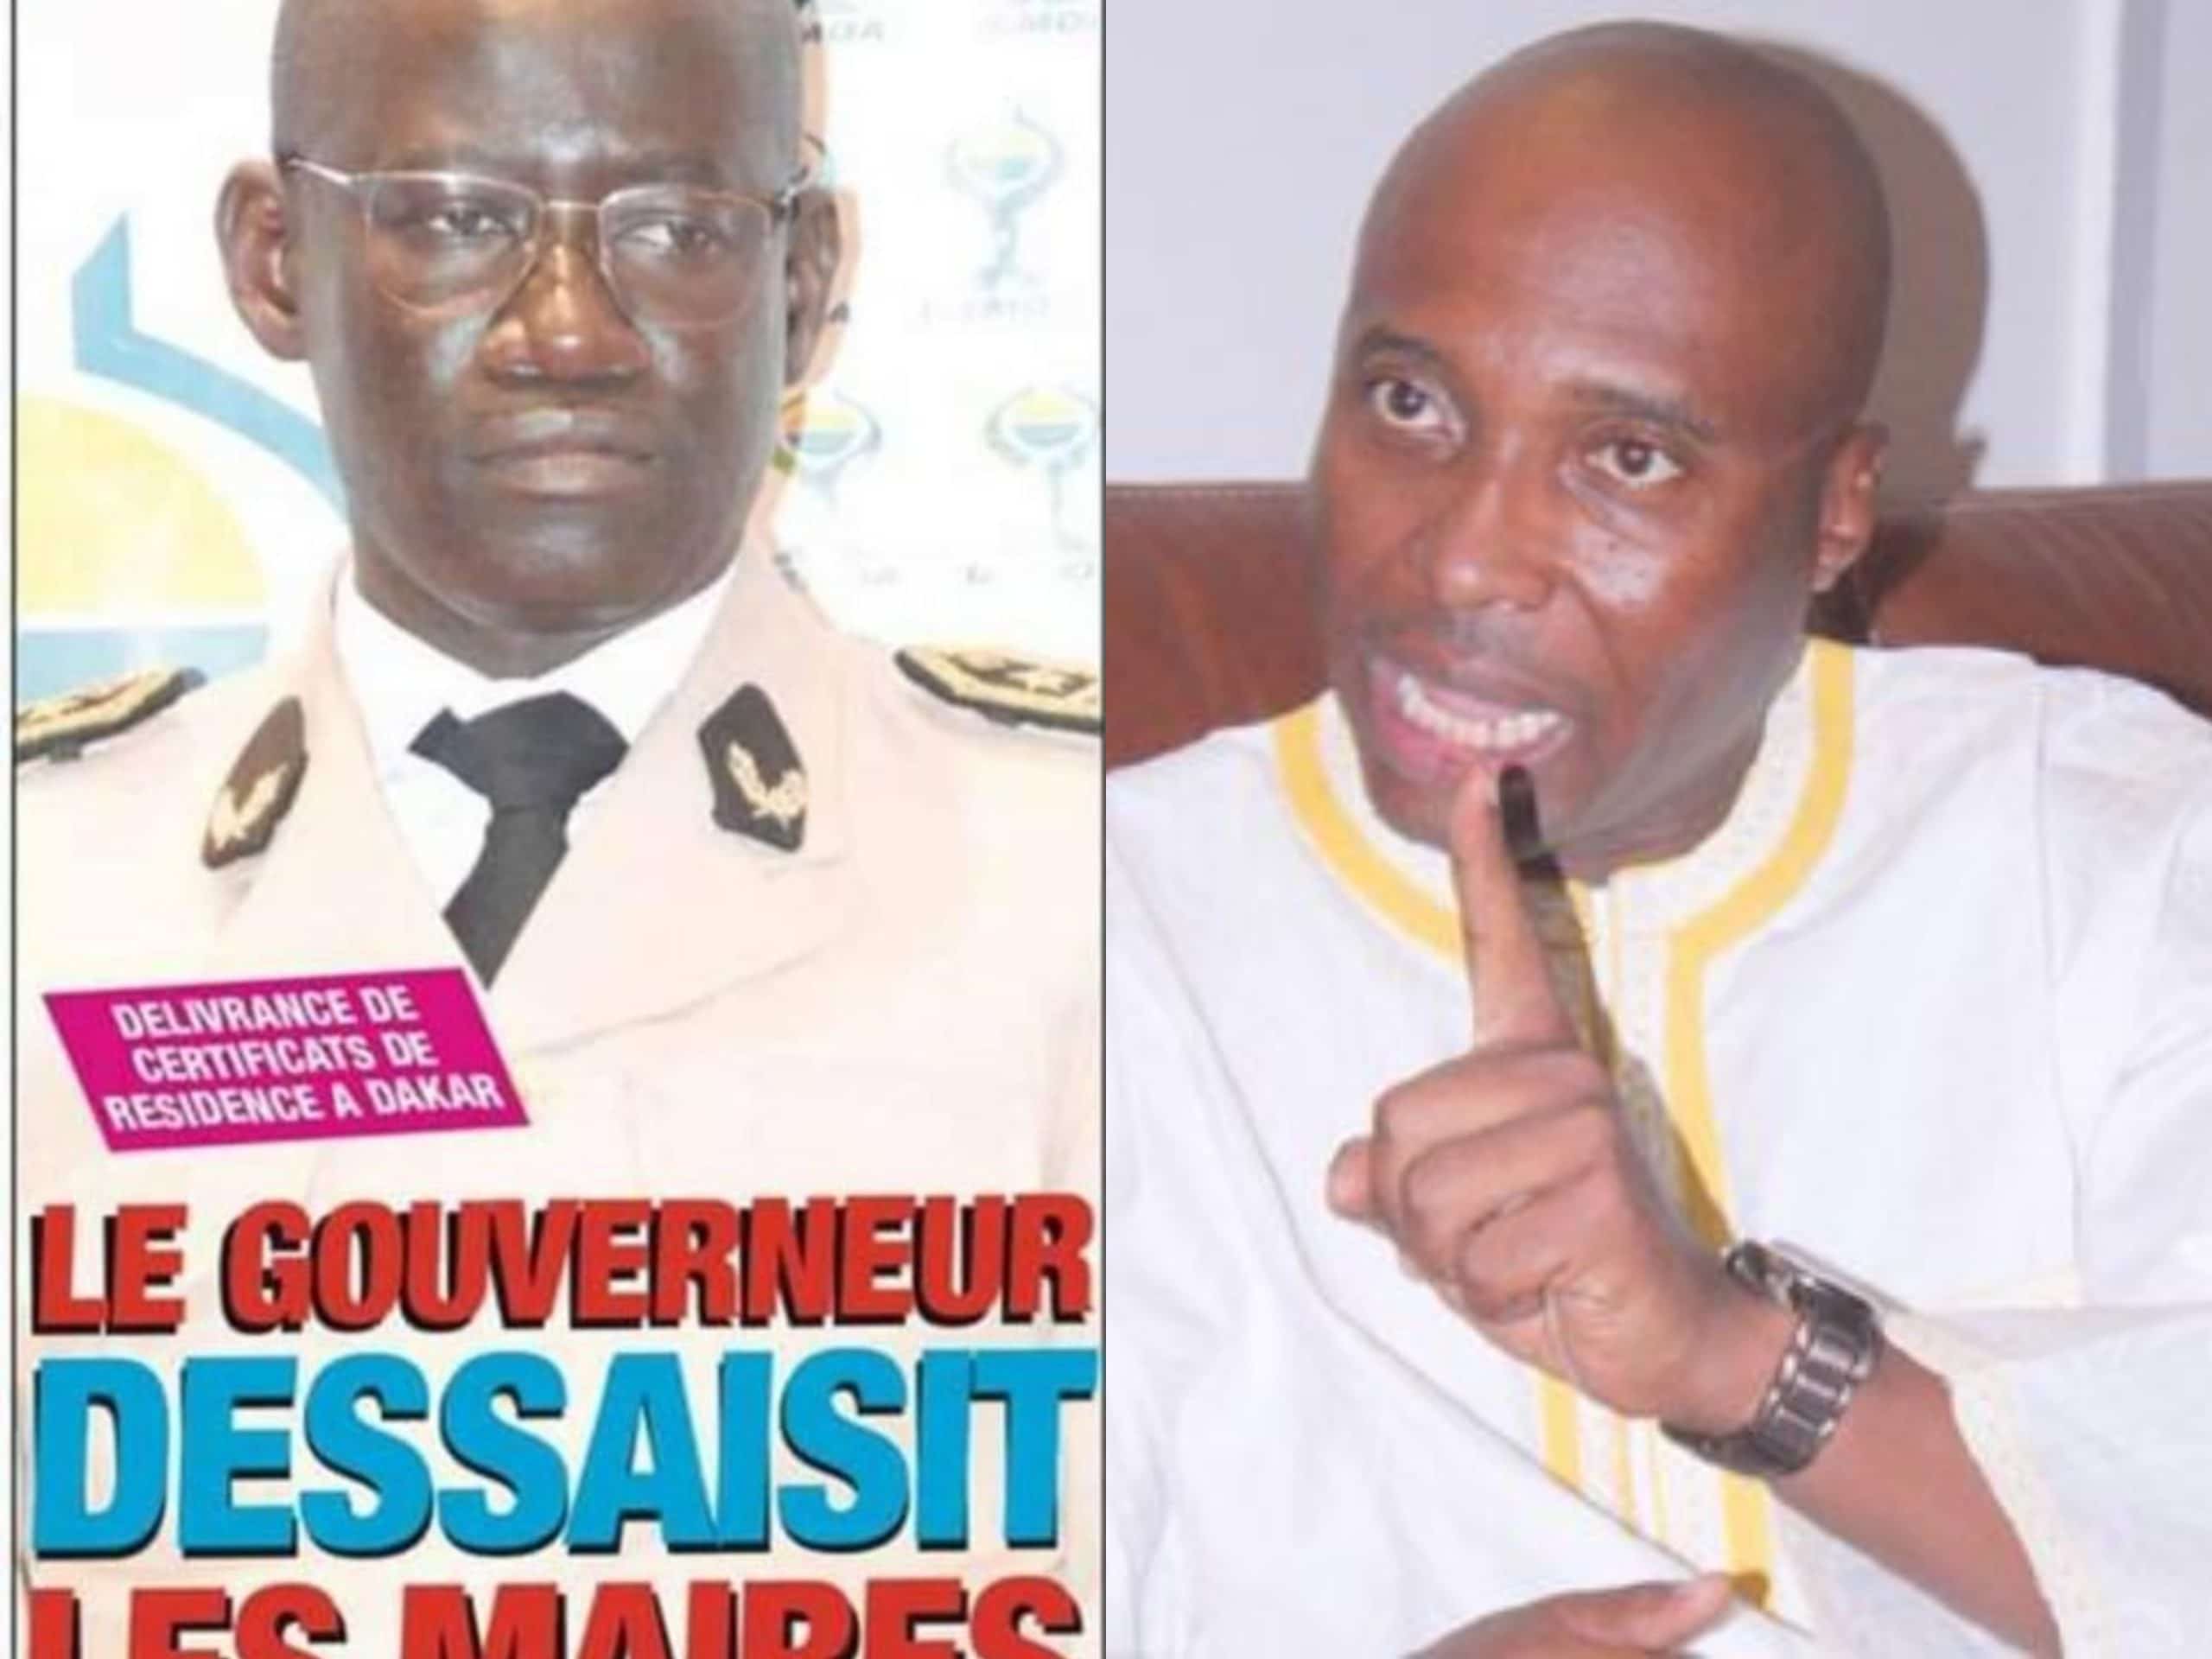 Délivrance des certificats de résidence : Barth' oppose un niet catégorique au gouverneur de Dakar